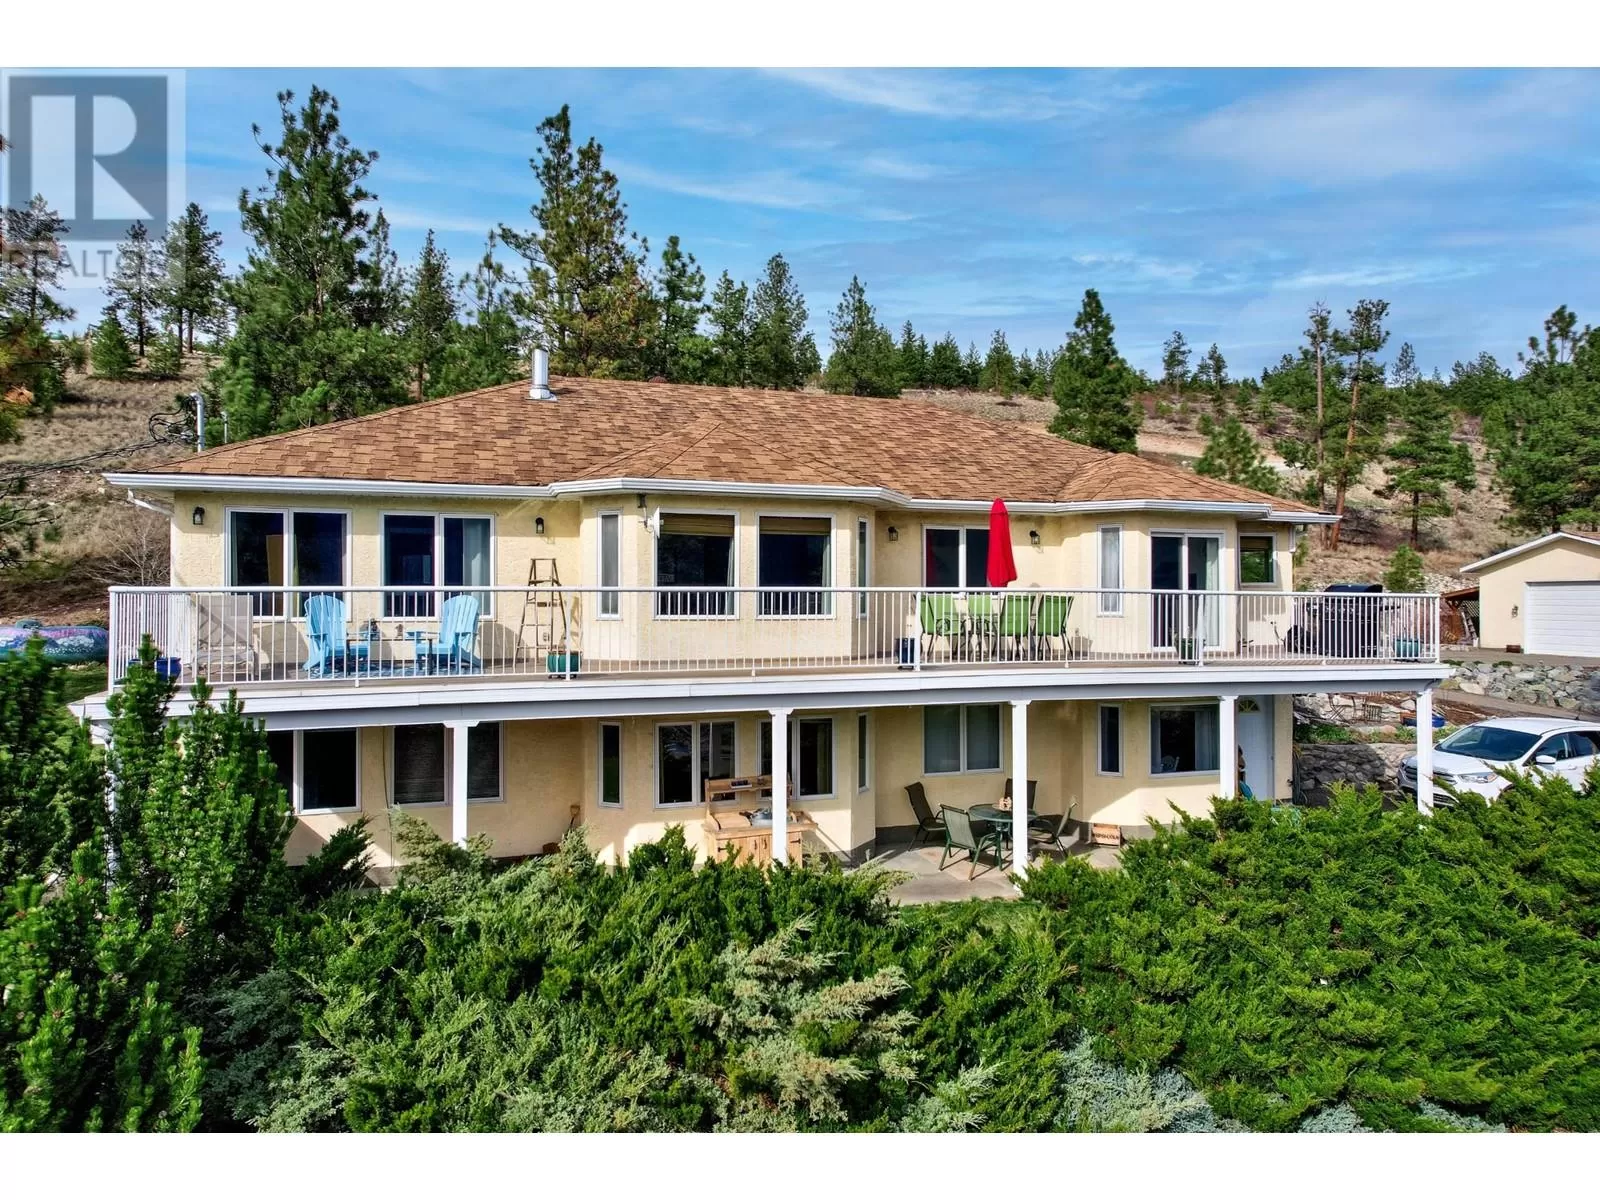 House for rent: 1837 Miller Rd, Merritt, British Columbia V1K 1R8